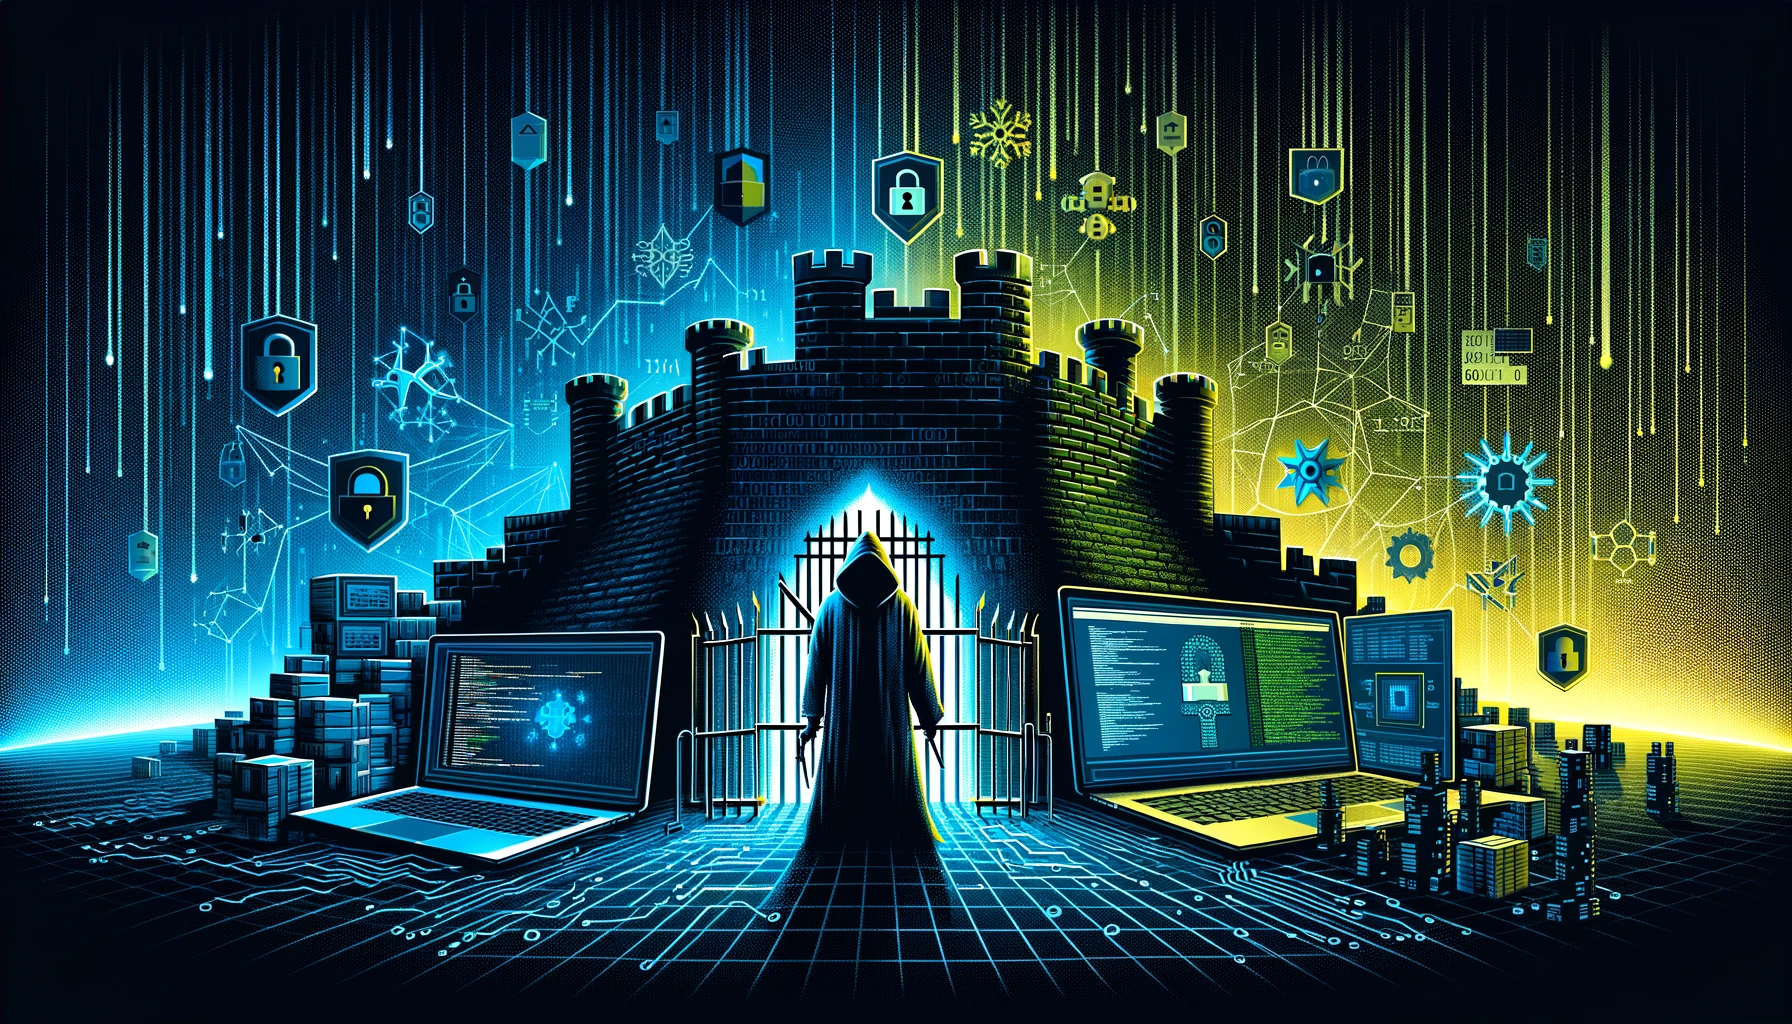 Une illustration représentant un paysage numérique divisé, avec d'un côté une forteresse robuste symbolisant un site web sécurisé, entourée de murs numériques, de pare-feu, et de symboles d'encryption, illustrant les défenses contre les cyberattaques. De l'autre côté, une figure ombragée avec une capuche représente un hacker, face au site sécurisé. Entre eux, des lignes de code et des nombres binaires flottent dans l'air, représentant la bataille en cours entre la sécurité et la vulnérabilité. Les couleurs contrastent entre les teintes sombres de bleus et de verts pour le côté hacker, et des jaunes brillants et des blancs pour le site sécurisé, soulignant le choc entre la menace et la protection dans le domaine de la cybersécurité.